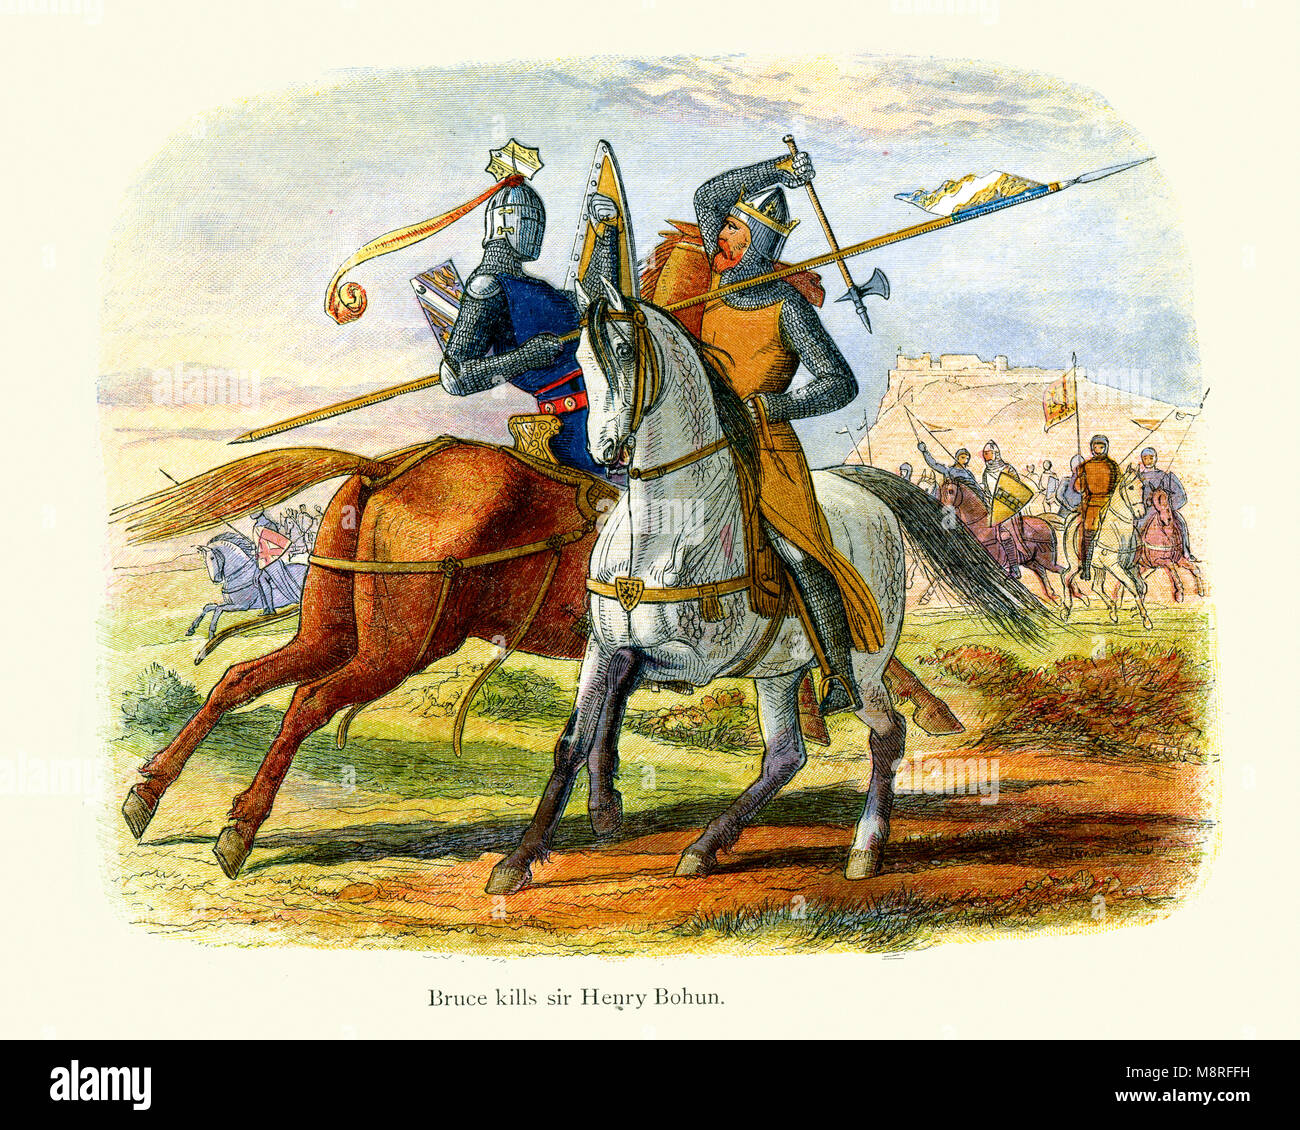 Robert the Bruce tötet Sir Henry de Bohun in der Schlacht von Bannockburn im Jahre 1314.  Henry de Bohun, Neffe des Earl of Hereford, fuhr vor h Stockfoto